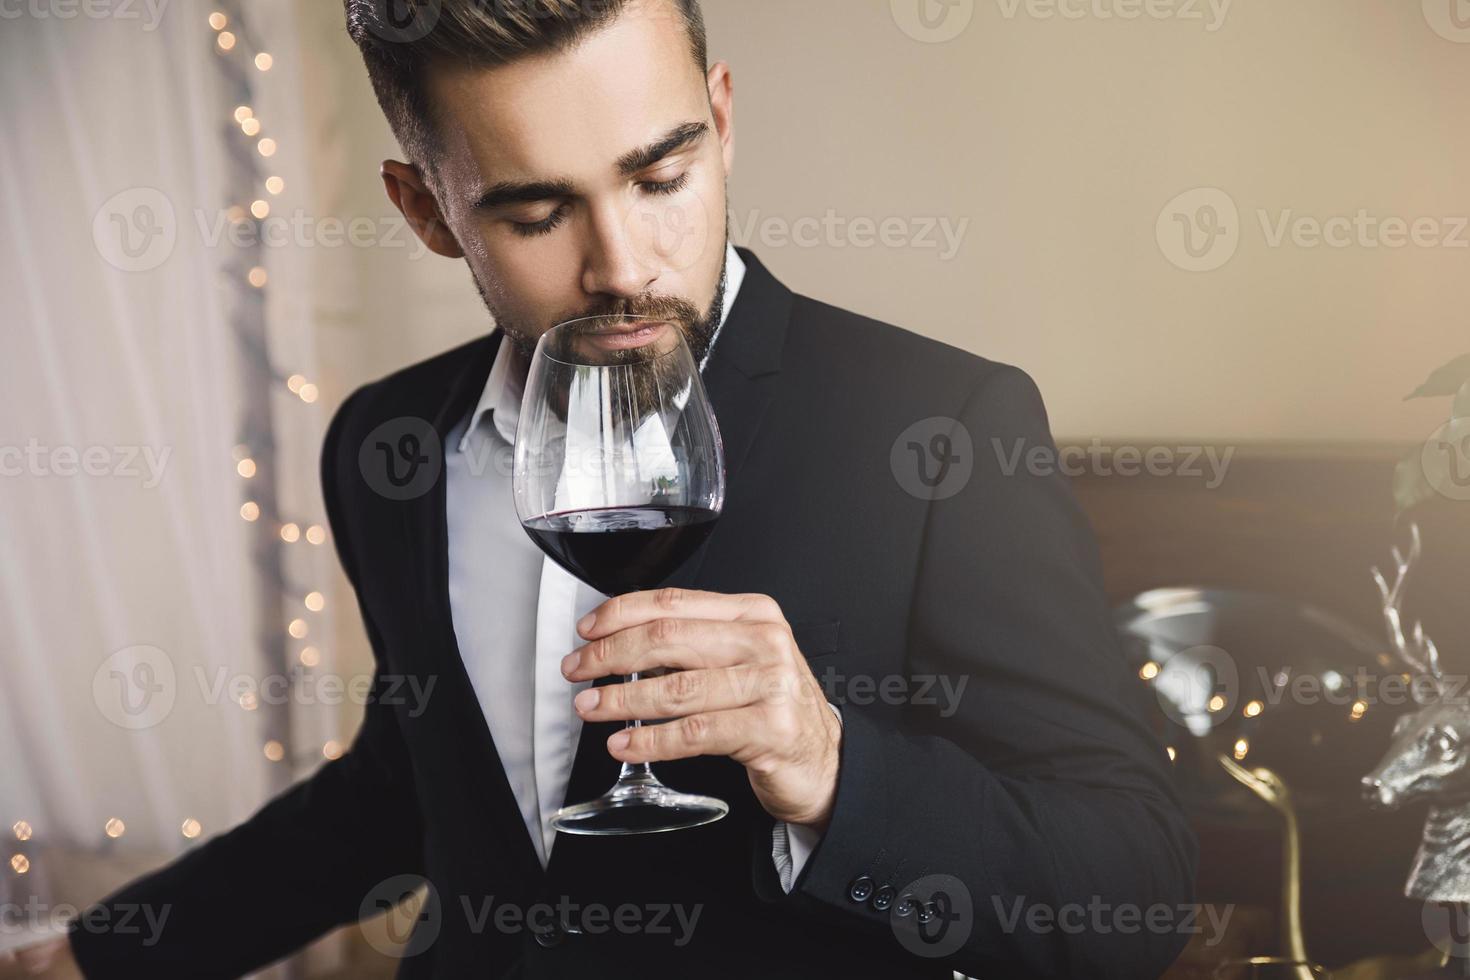 homem barbudo bonito com um copo de vinho tinto foto